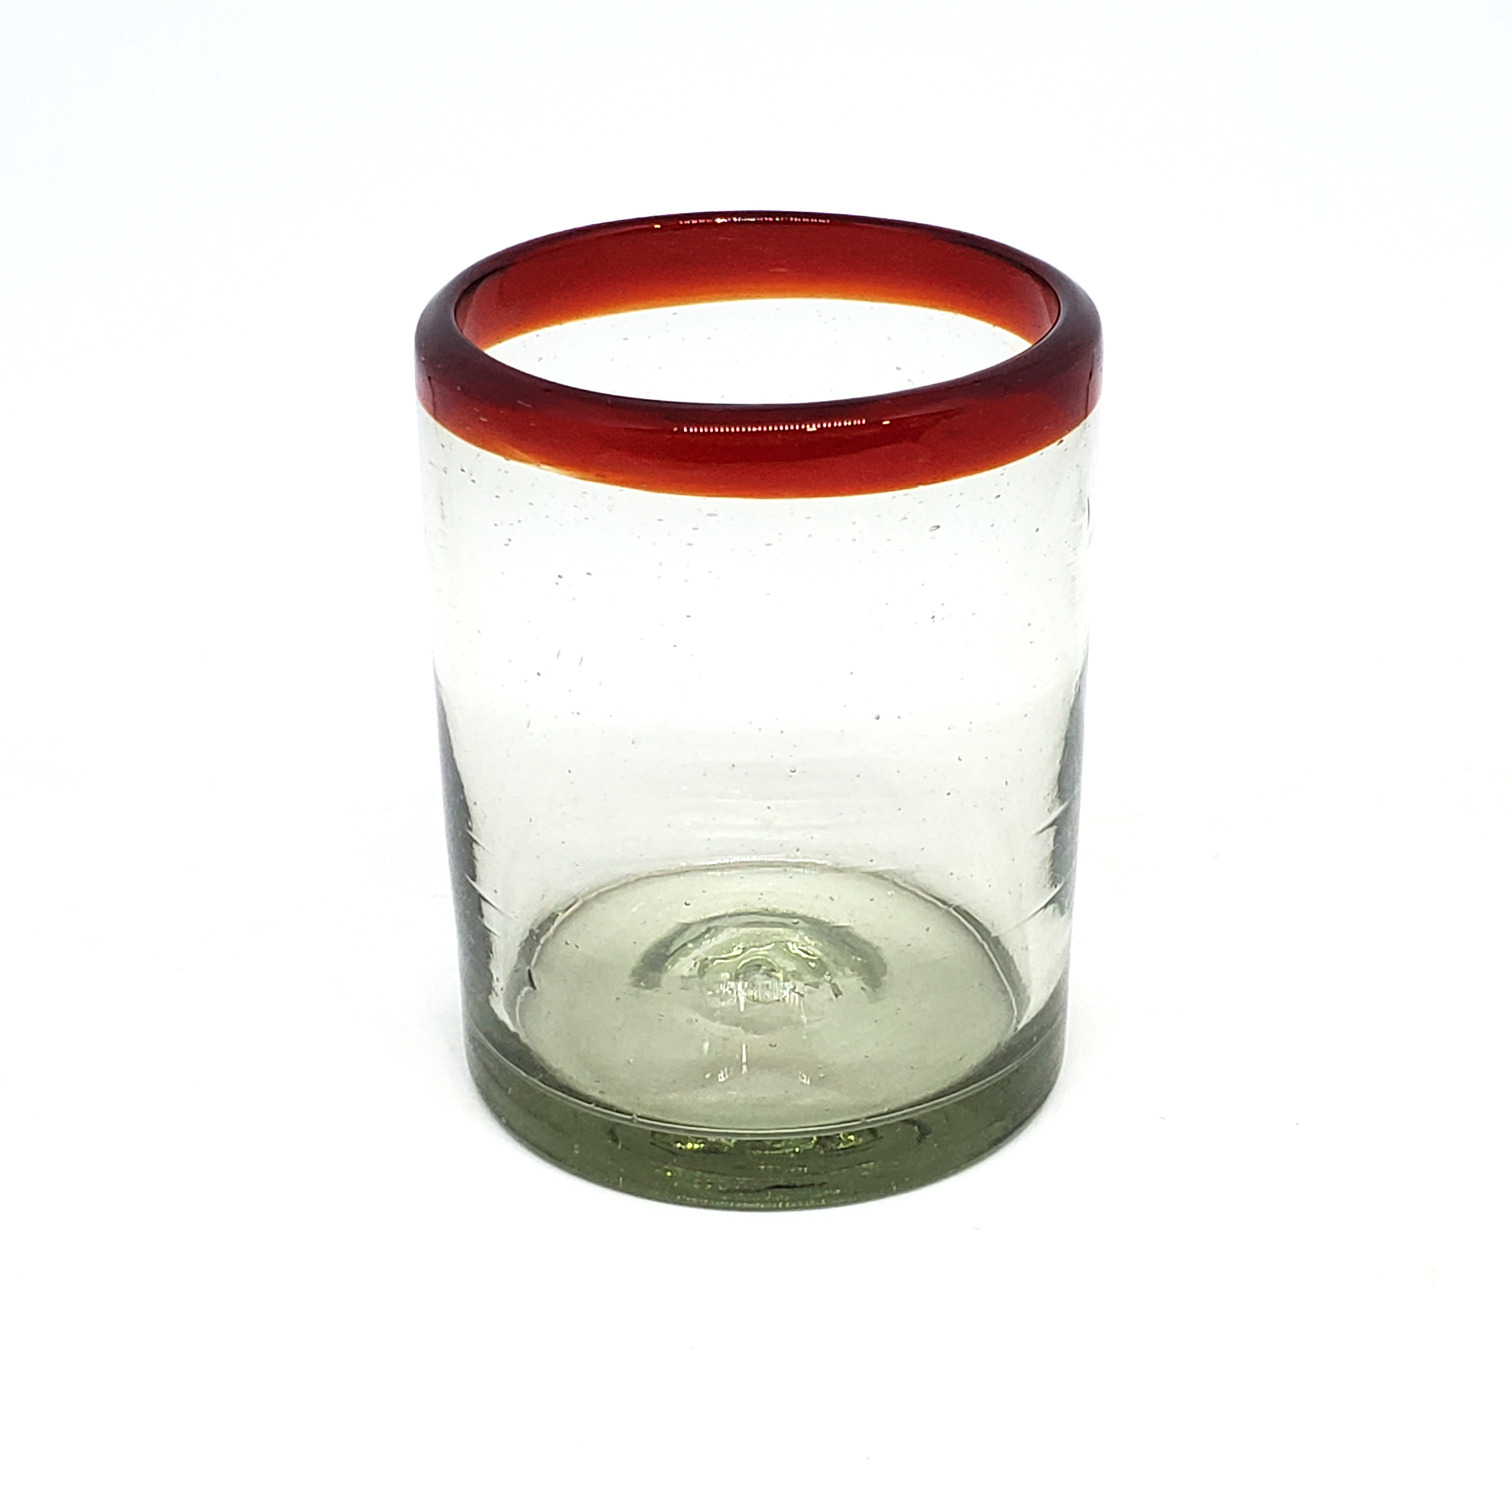 VIDRIO SOPLADO / vasos chicos con borde rojo rub, 10 oz, Vidrio Reciclado, Libre de Plomo y Toxinas